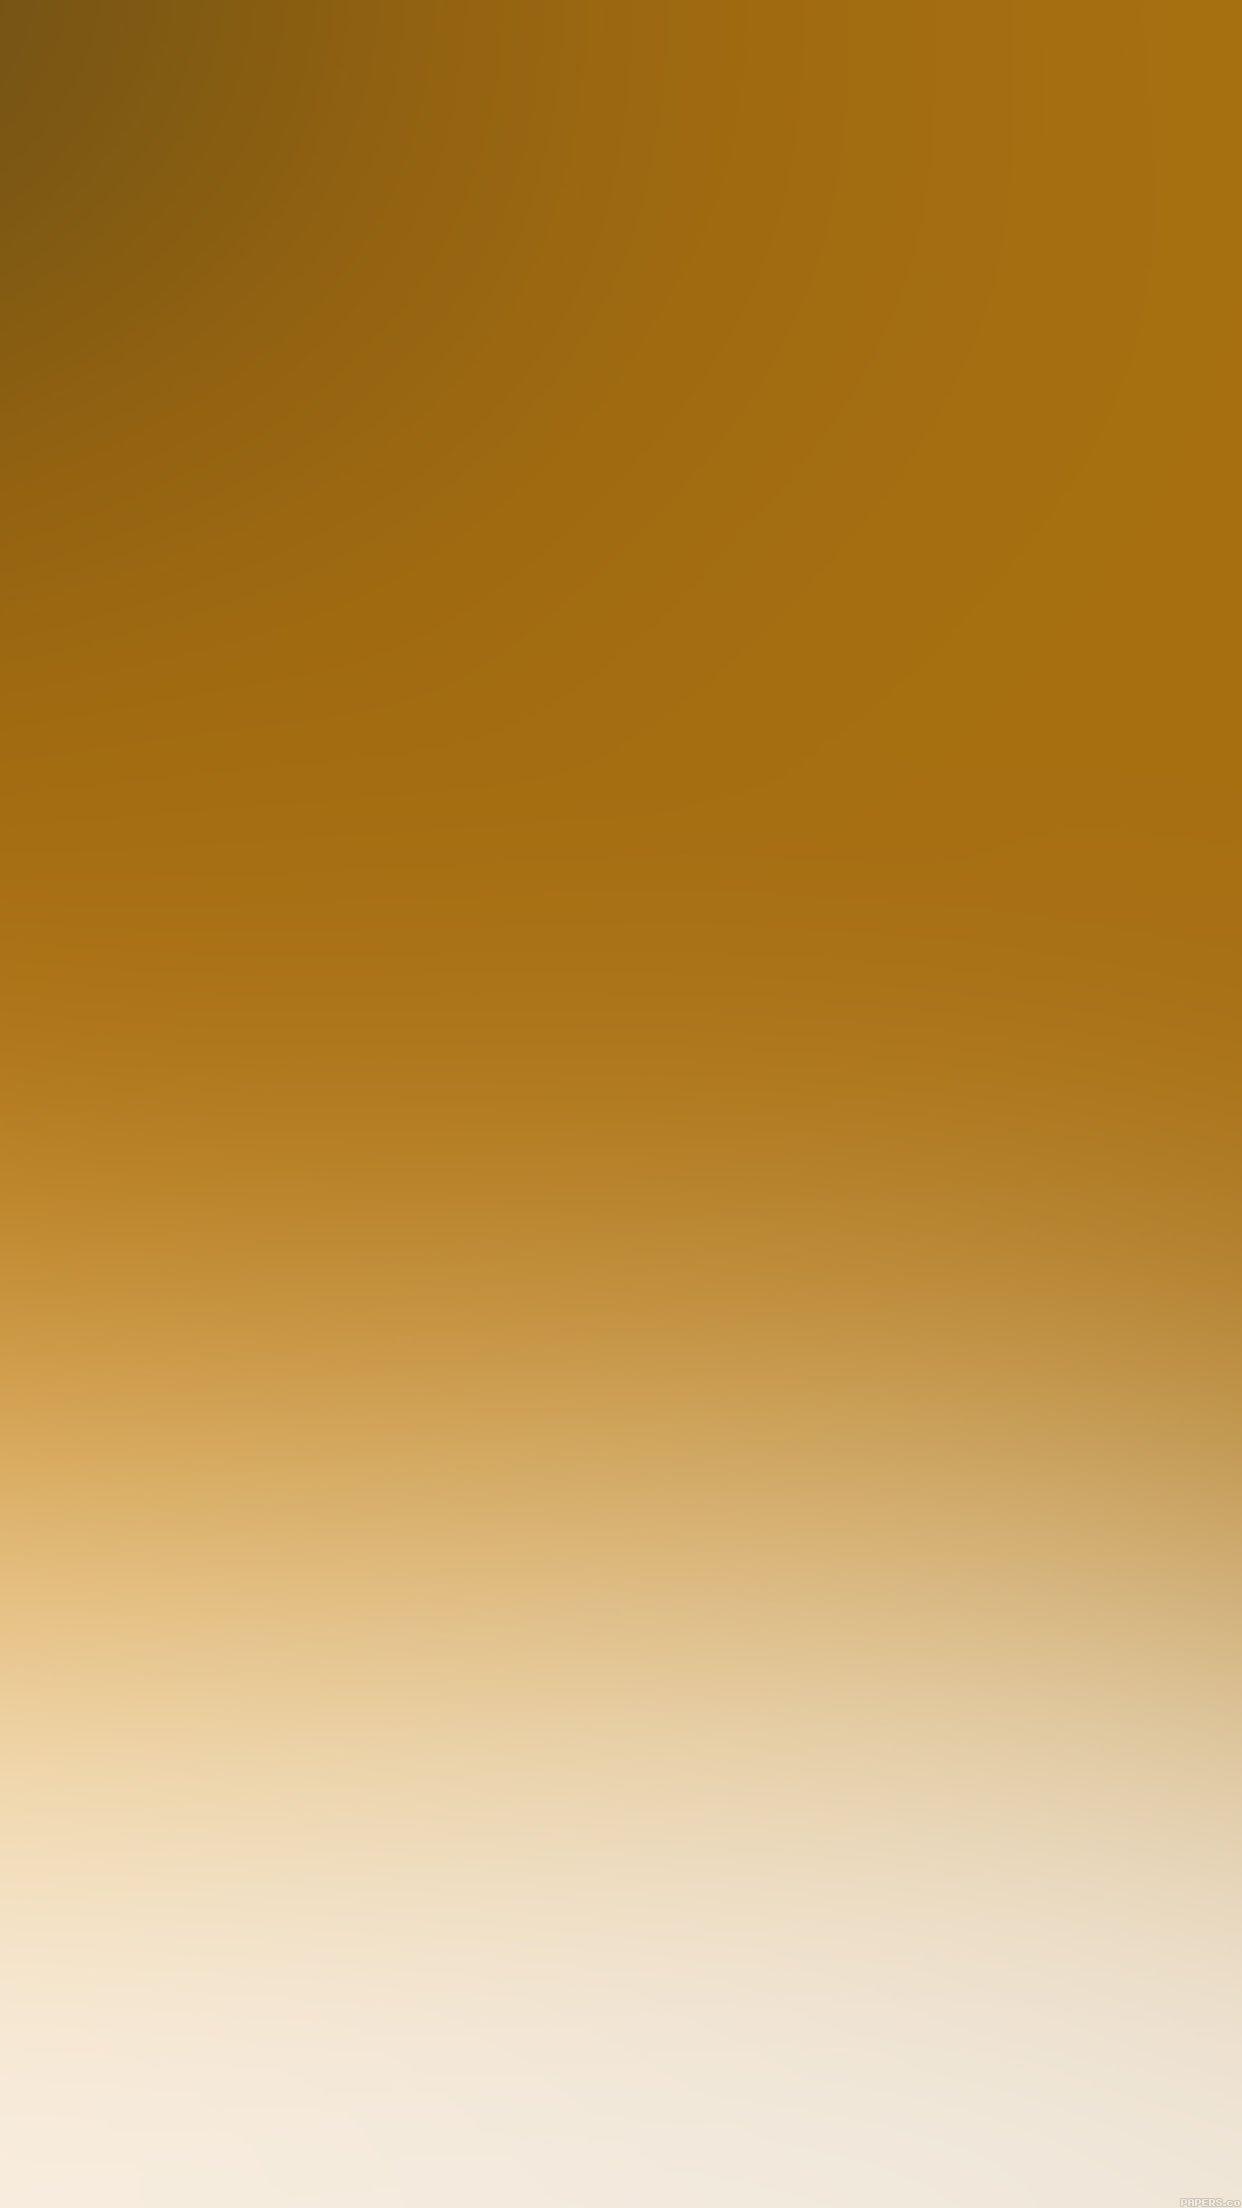 Download Gambar Wallpaper Gold Iphone terbaru 2020